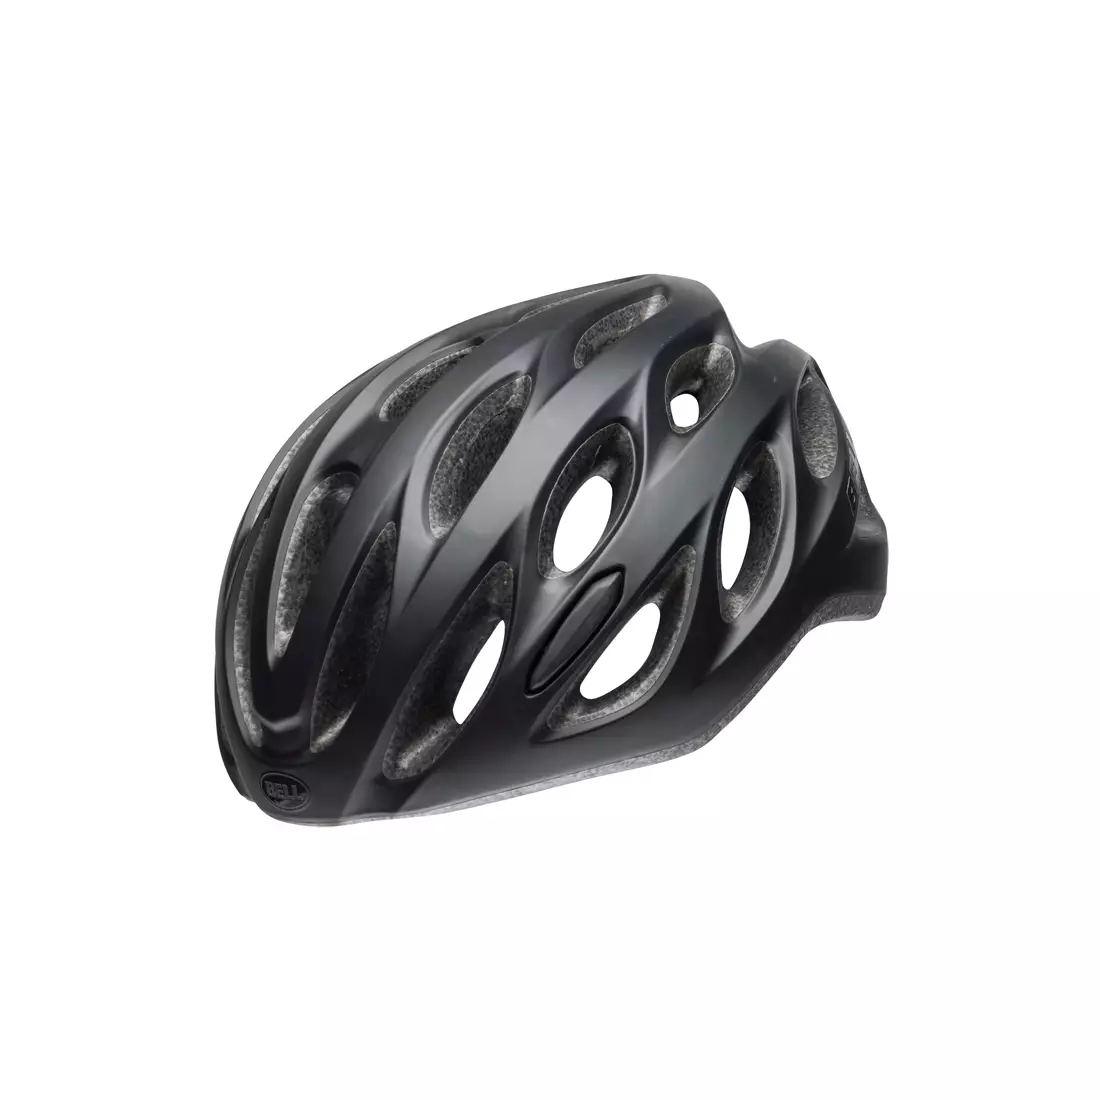 BELL TRACKER R - BEL-7095369 - cyklistická helma černá matná